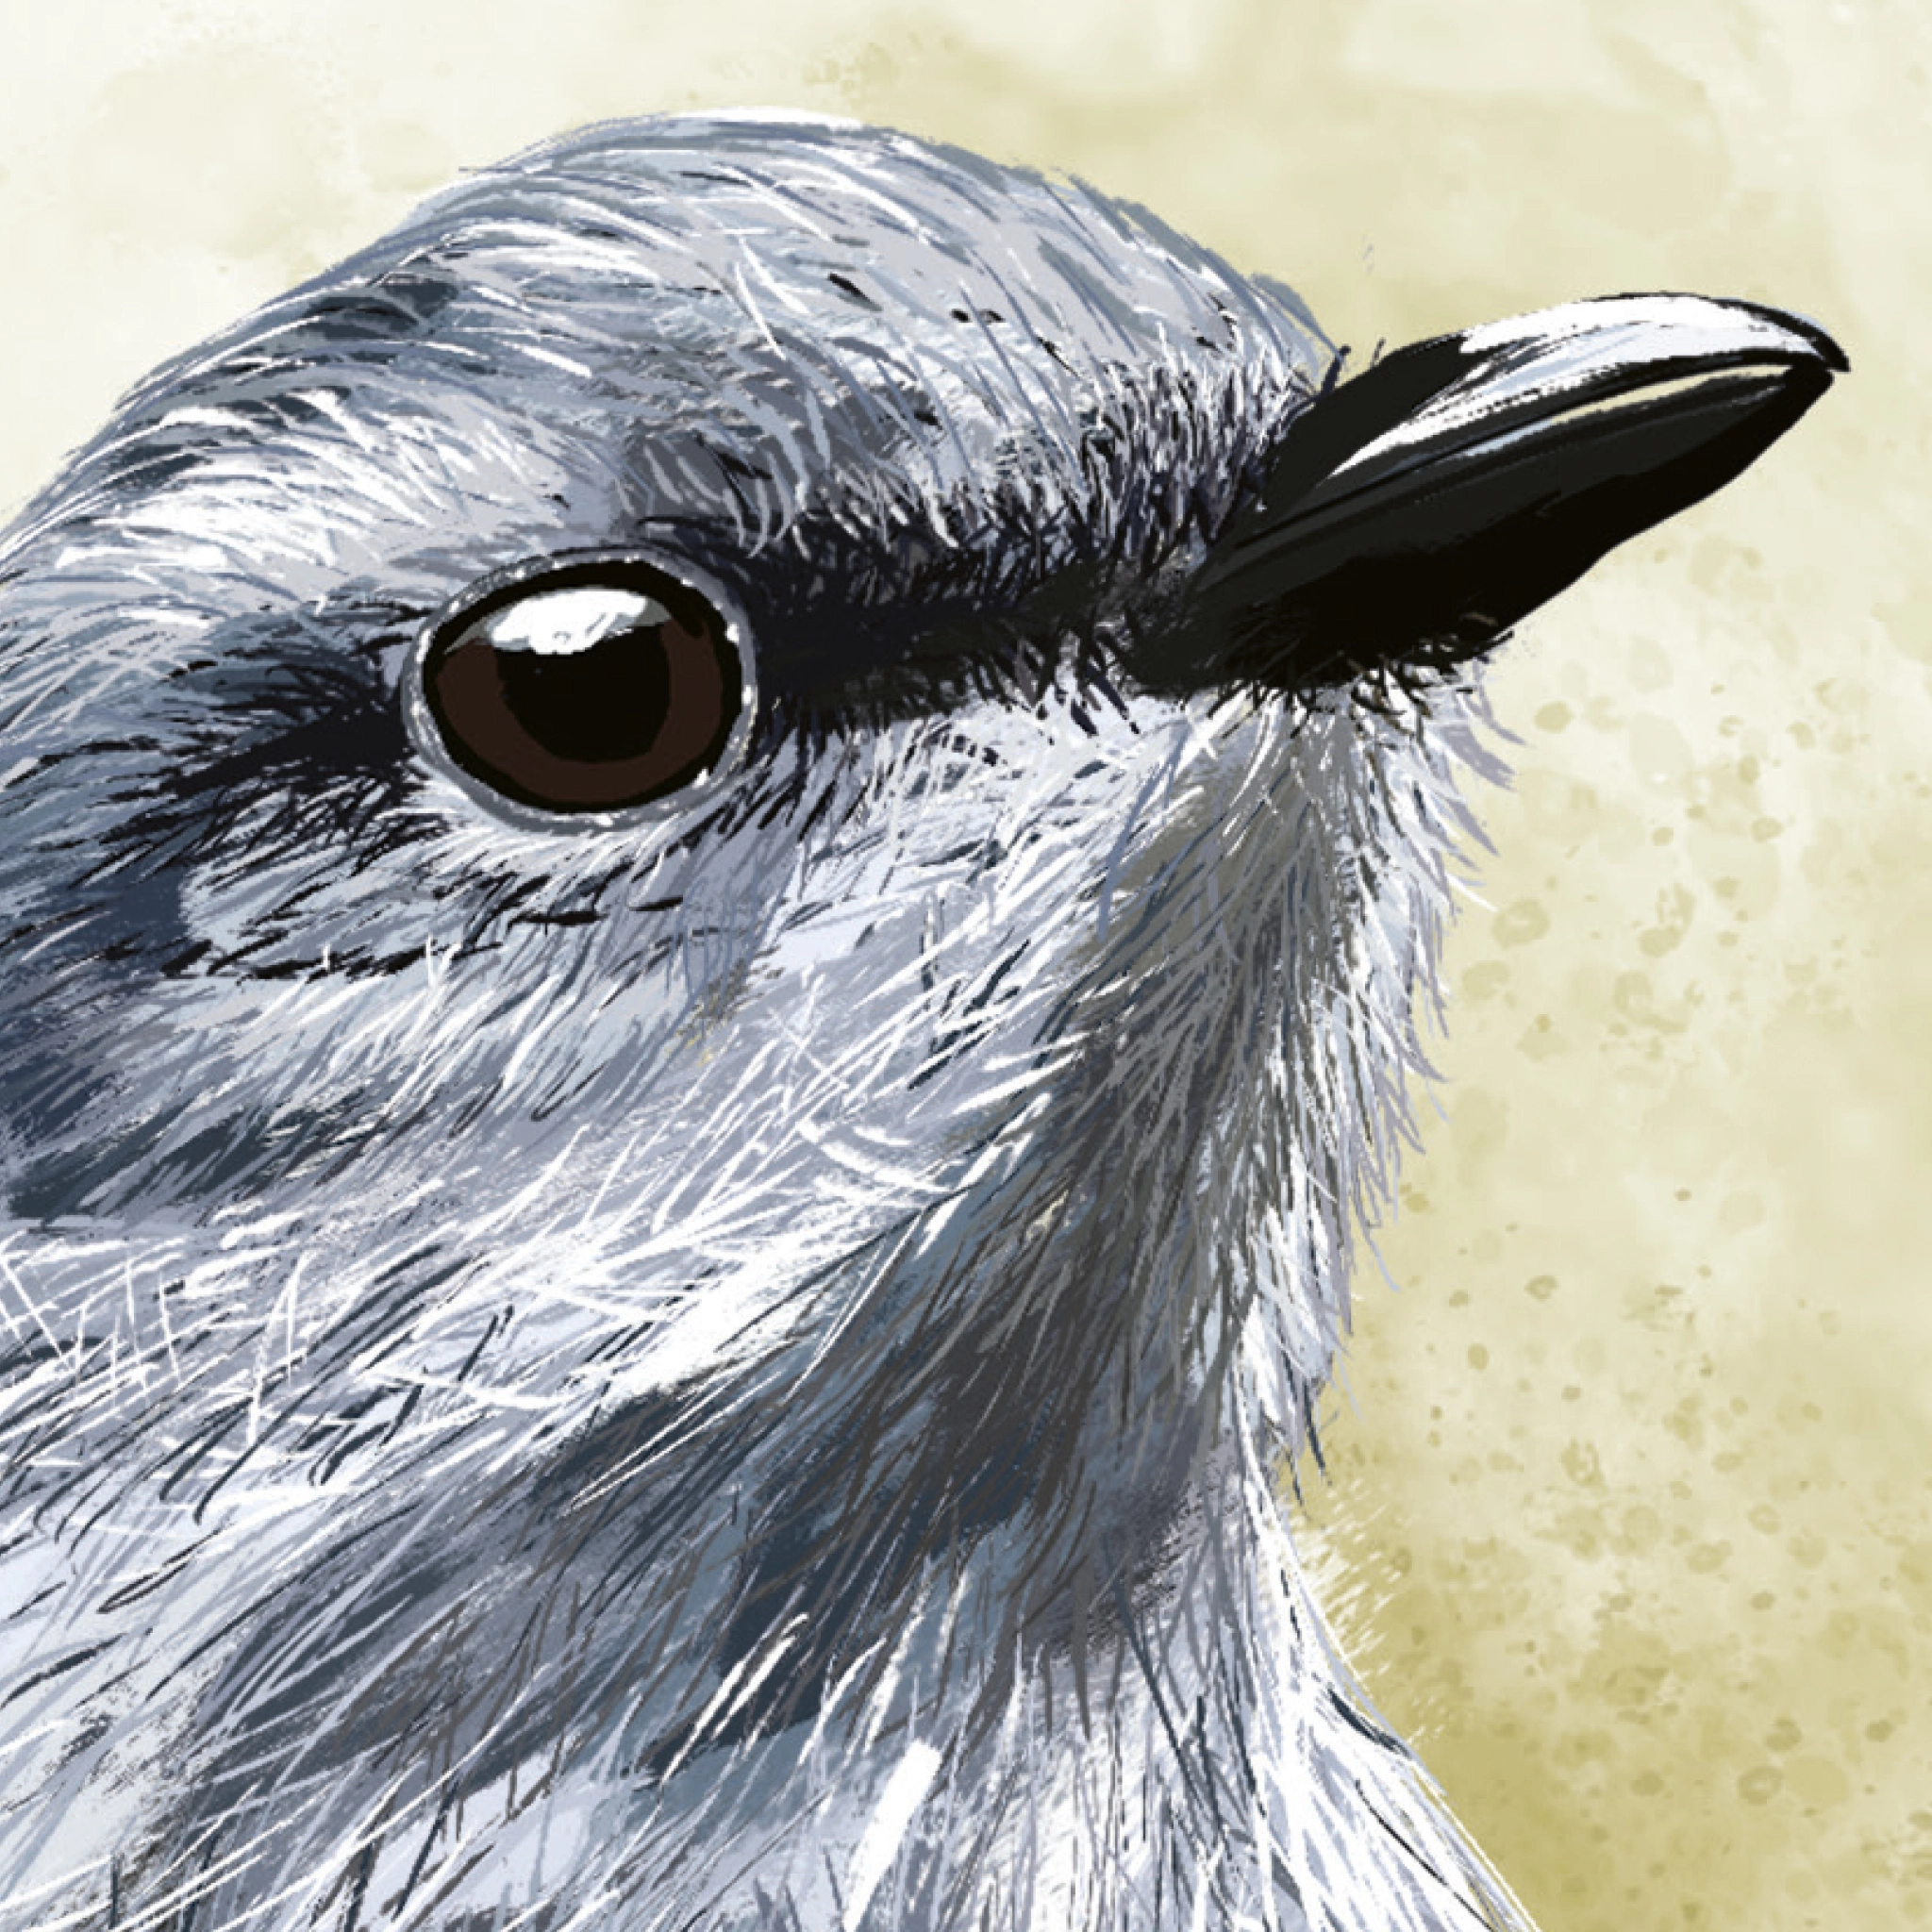 Gros plan sur l'illustration en couleur d'un oiseau. L'oiseau a un plumage bleu, violet, un petit bec noir et un oeil ouvert.